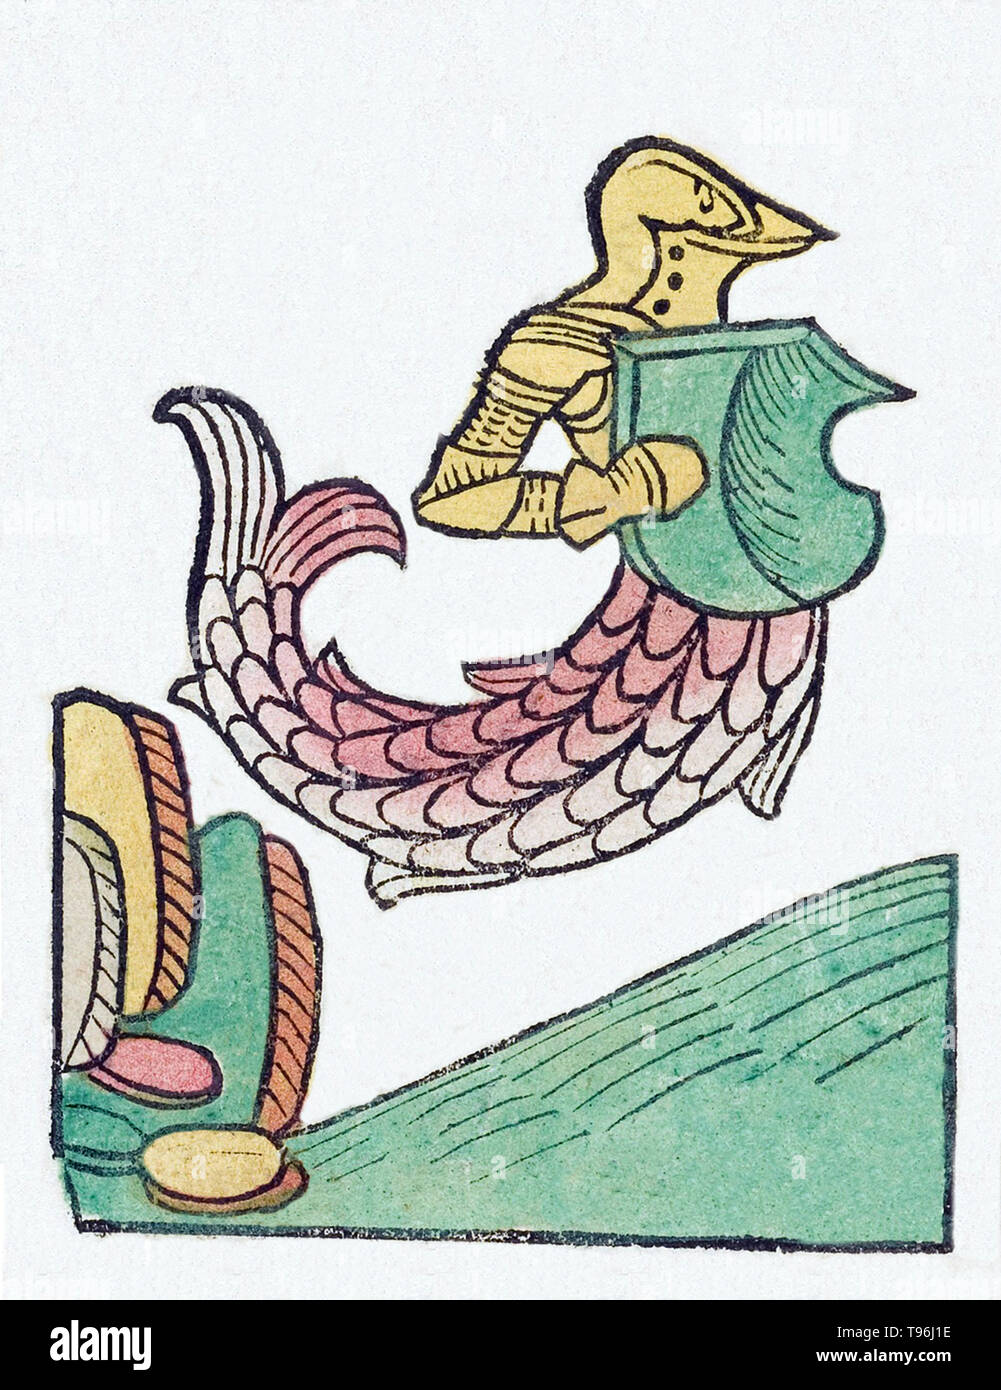 Un zitiron, o sea knight, è un personaggio mitologico che presenta un corpo superiore in forma di un Cavaliere armato, fusa con la coda di un pesce. L' Hortus Sanitatis (giardino di salute), la prima storia naturale enciclopedia, è stata pubblicata da Jacob Meydenbach in Germania, 1491. Egli descrive le piante e gli animali (sia reale e mitica) insieme con i minerali e di vari mestieri, con il loro valore medicinale e metodo di preparazione. La colorata a mano in xilografia illustrazioni sono stilizzati ma spesso facilmente riconoscibile. 1547 edition. Foto Stock